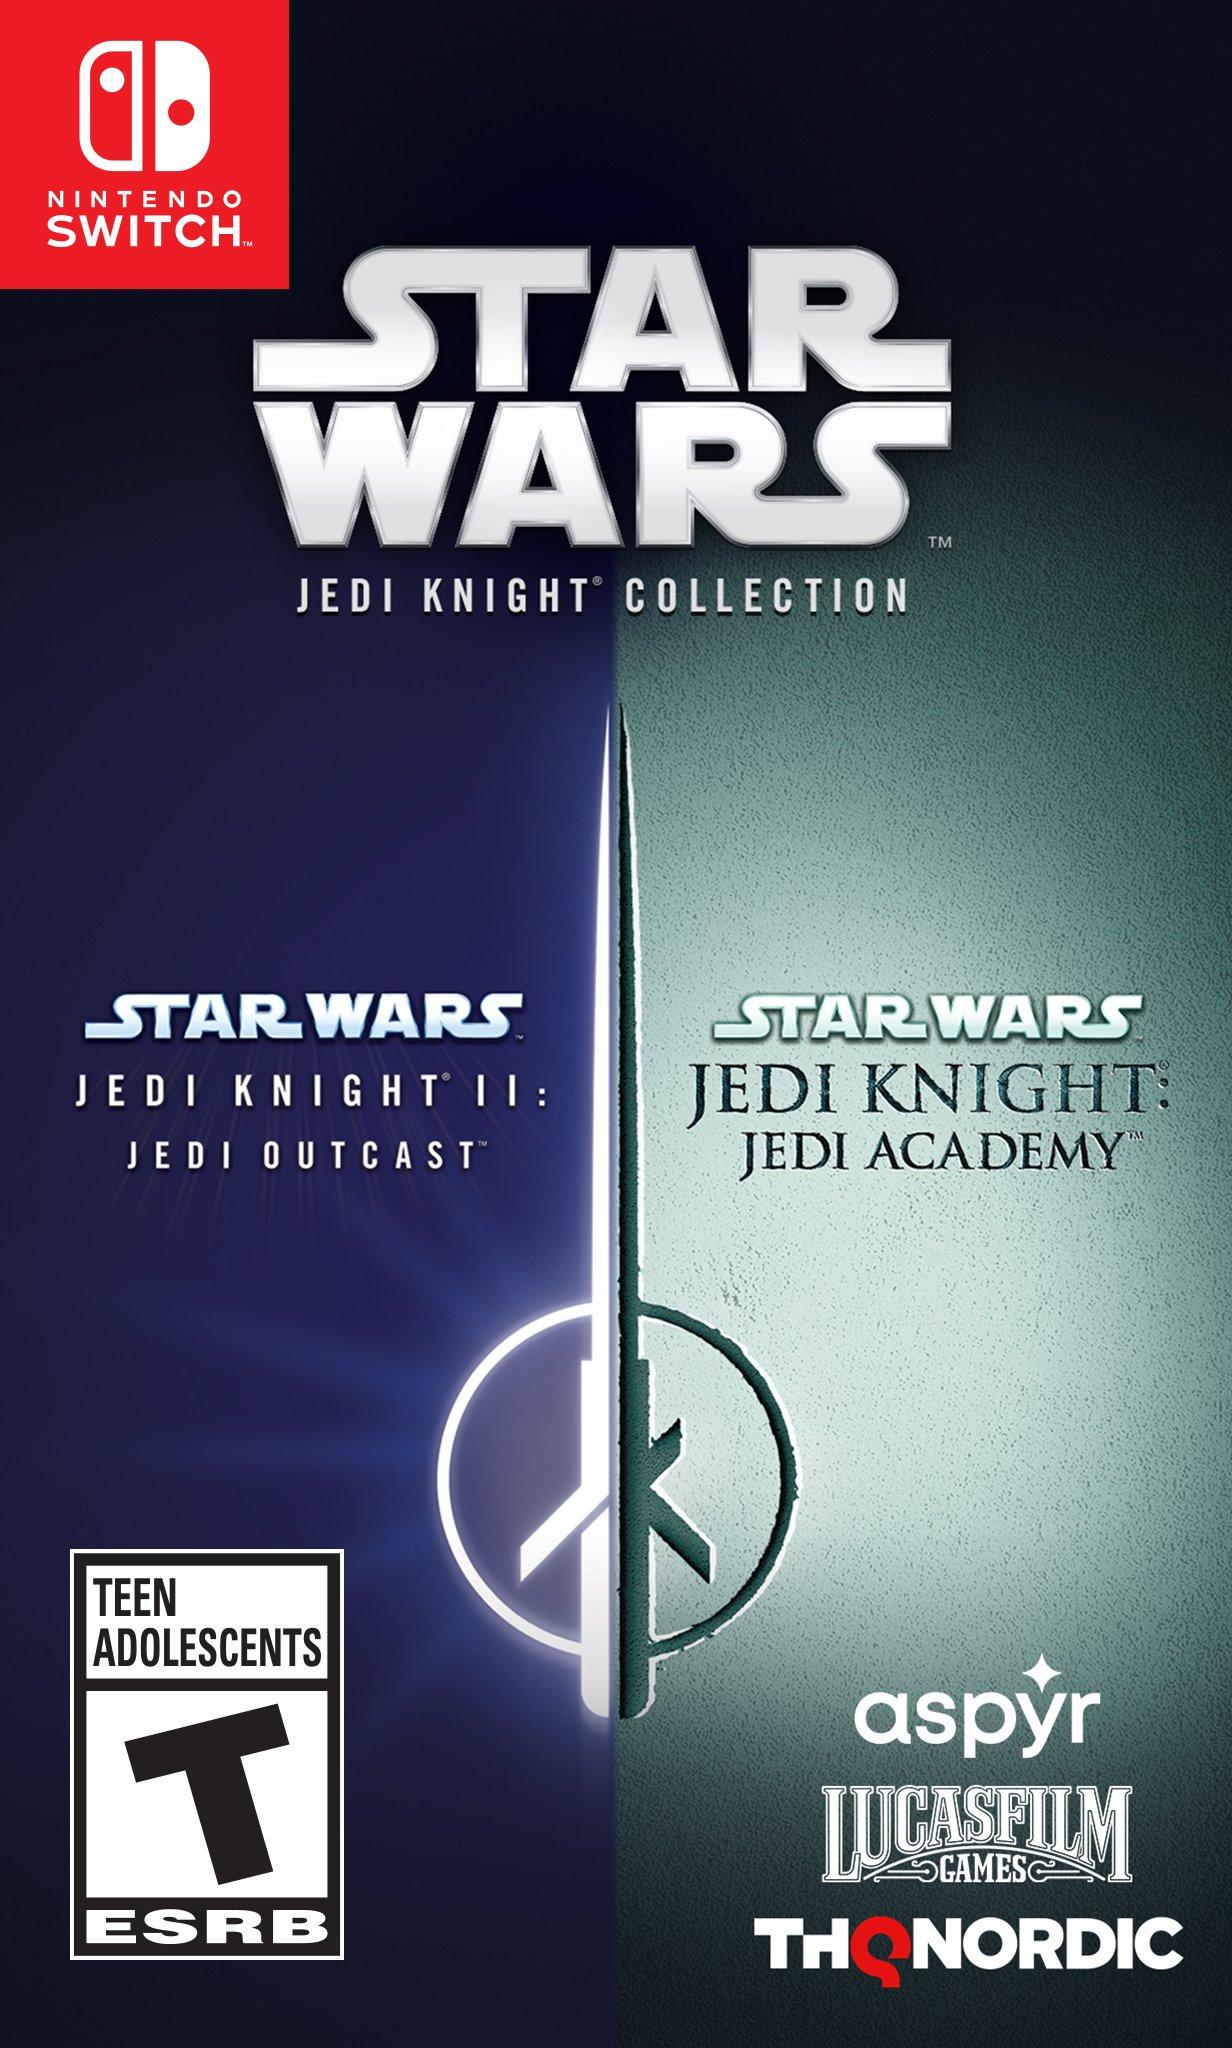 Star Wars Jedi Knight Jedi Academy Last Mission